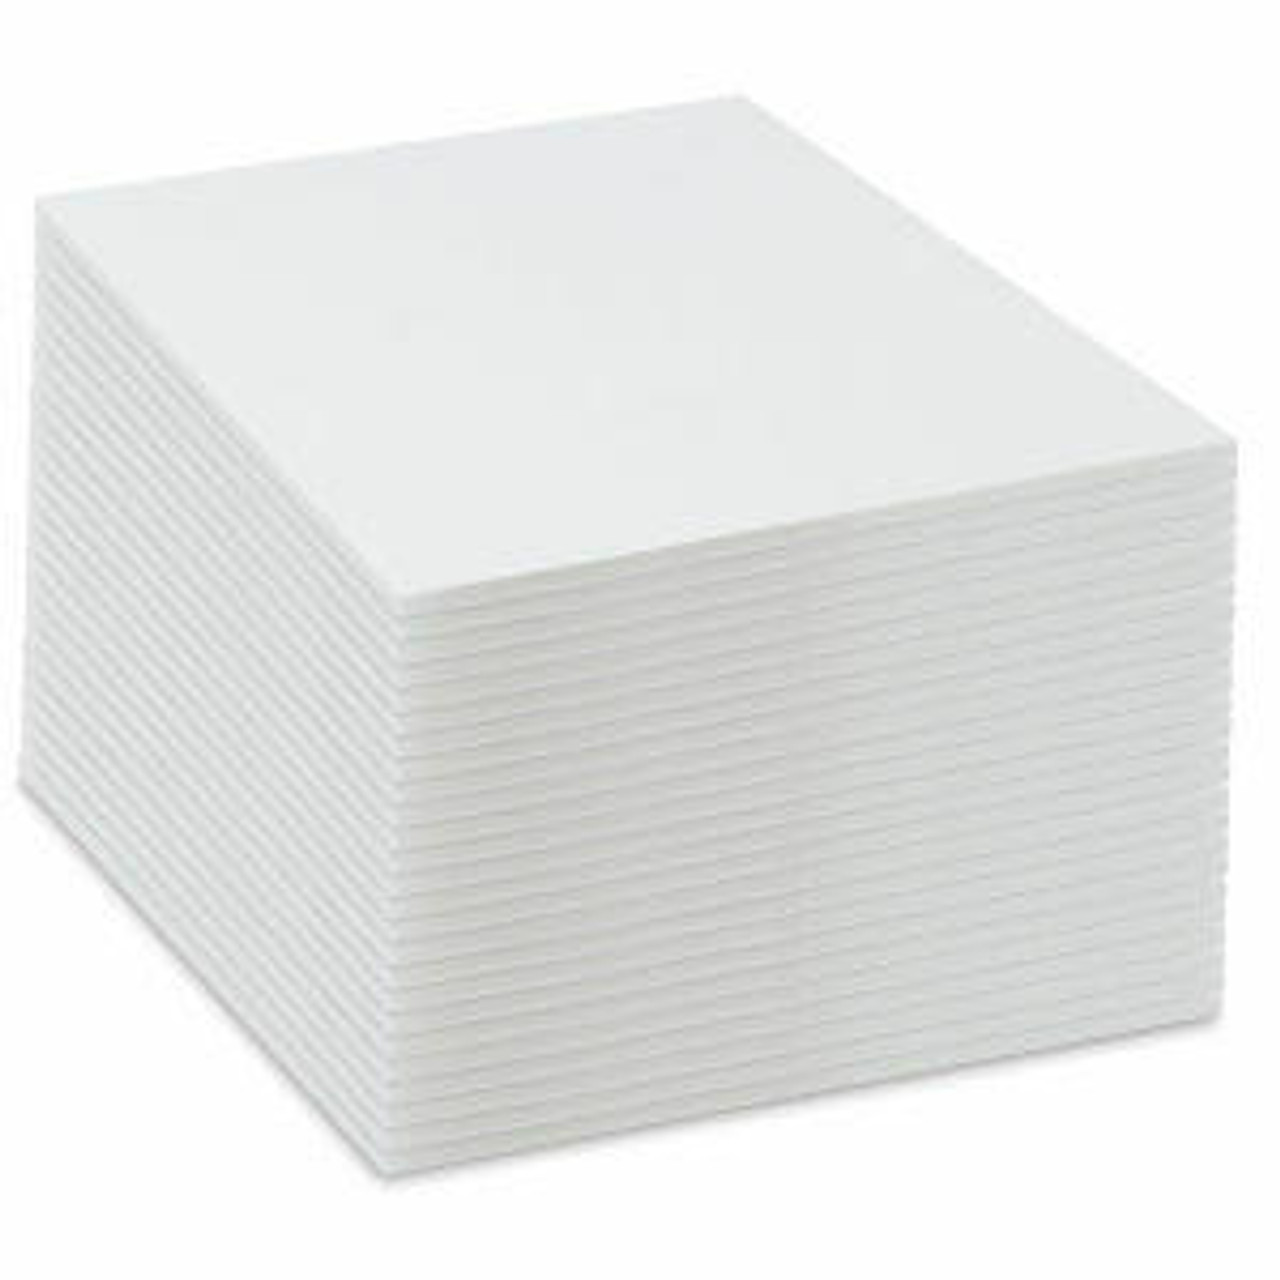 60 x120 x 3/16 White Foam Board 12 pack